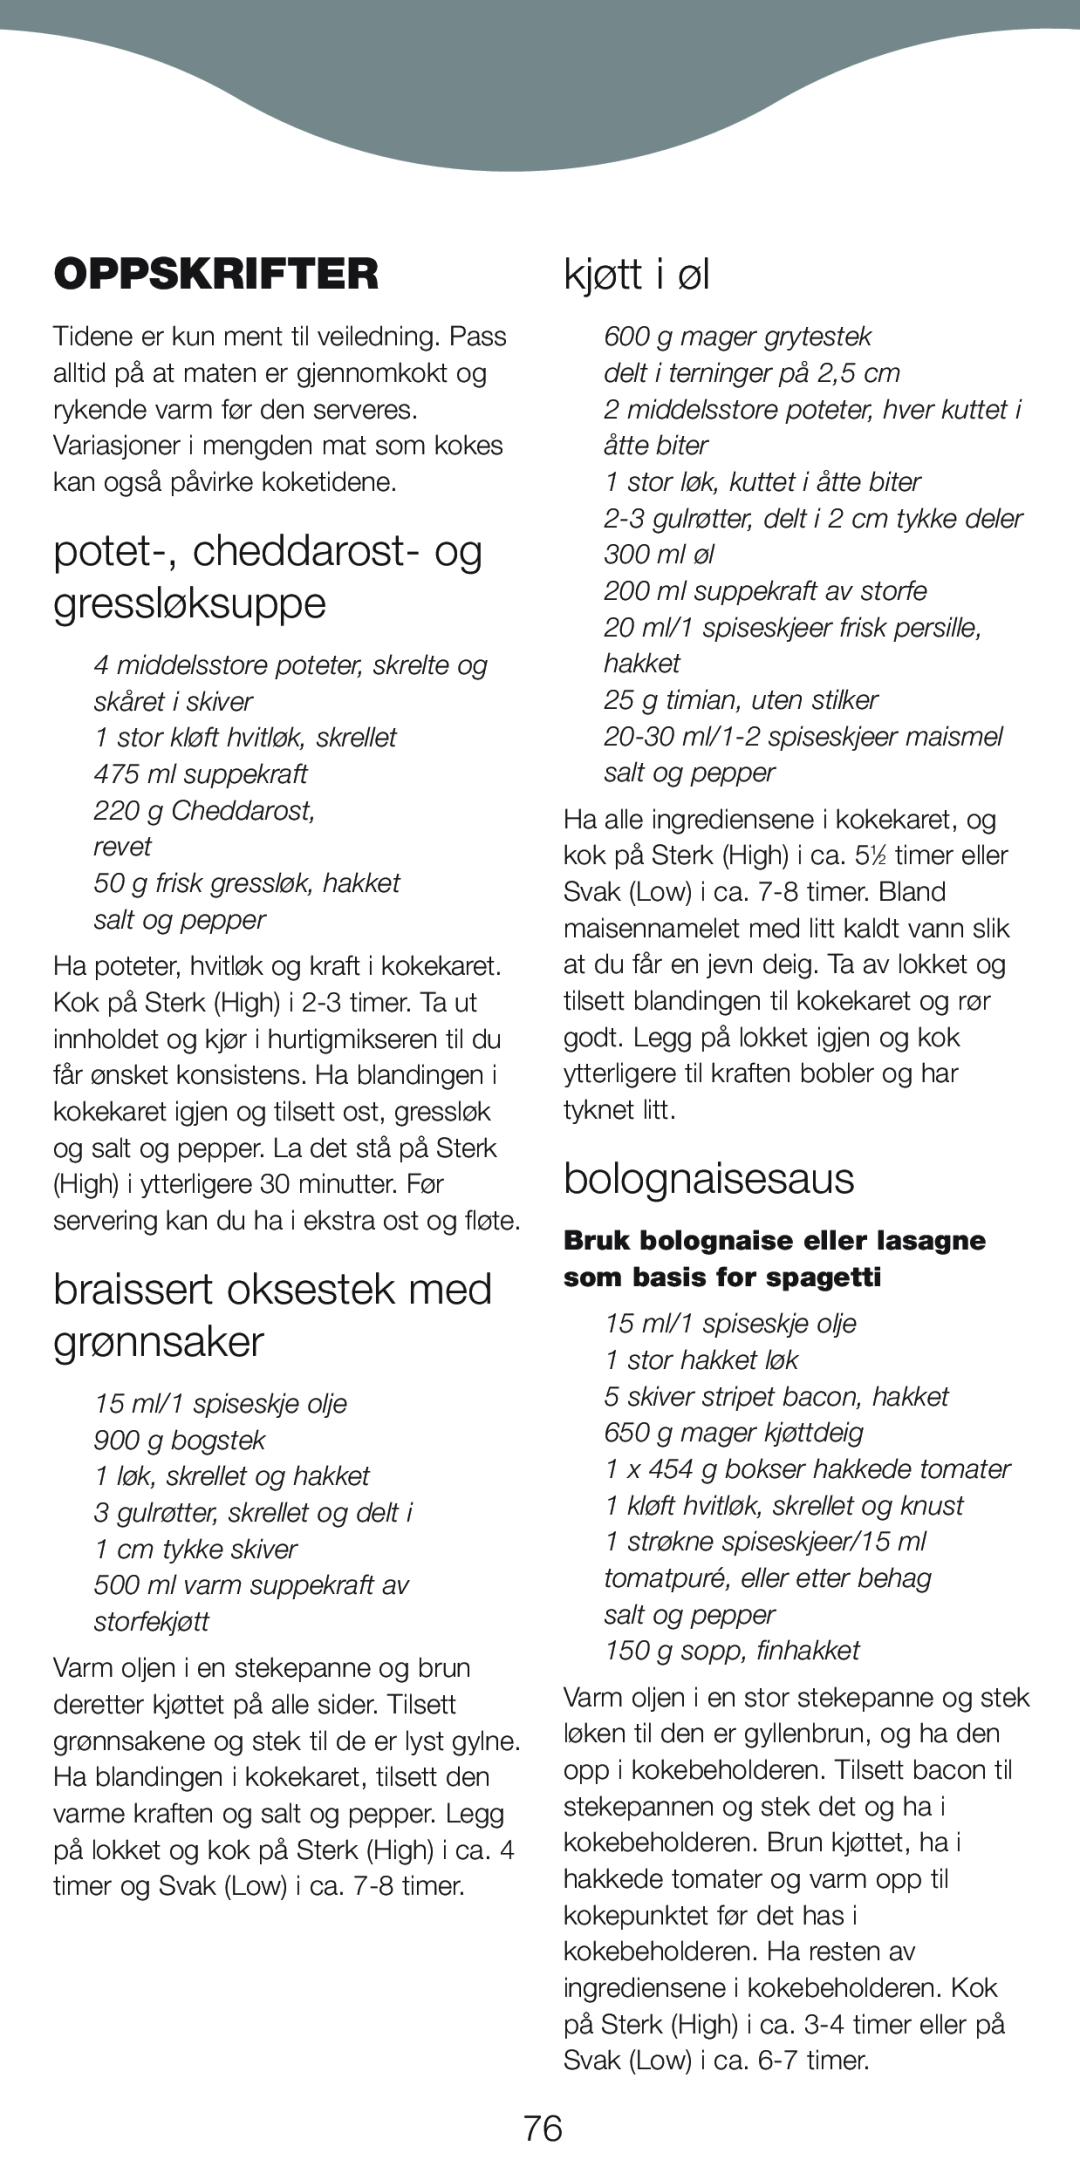 Kenwood CP706, CP707 manual Oppskrifter, potet-,cheddarost- og gressløksuppe, braissert oksestek med grønnsaker, kjøtt i øl 